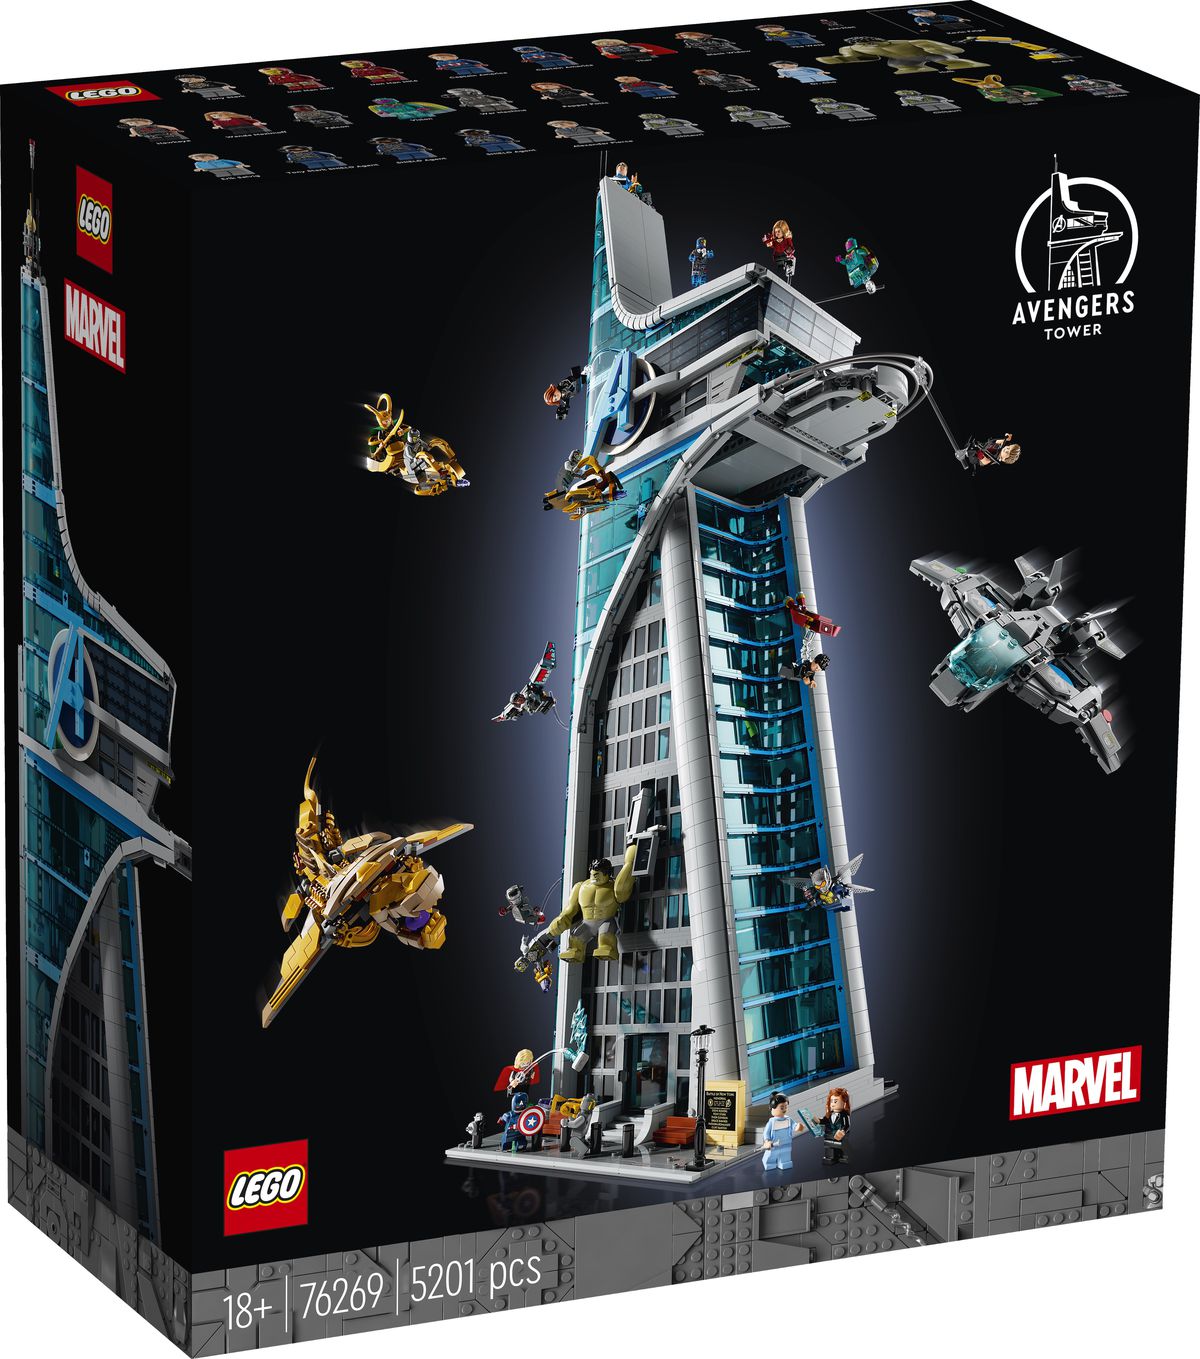 En boxbild av Lego Avengers Tower, som visar olika Avengers och Chitauri-styrkor som kämpar på utsidan